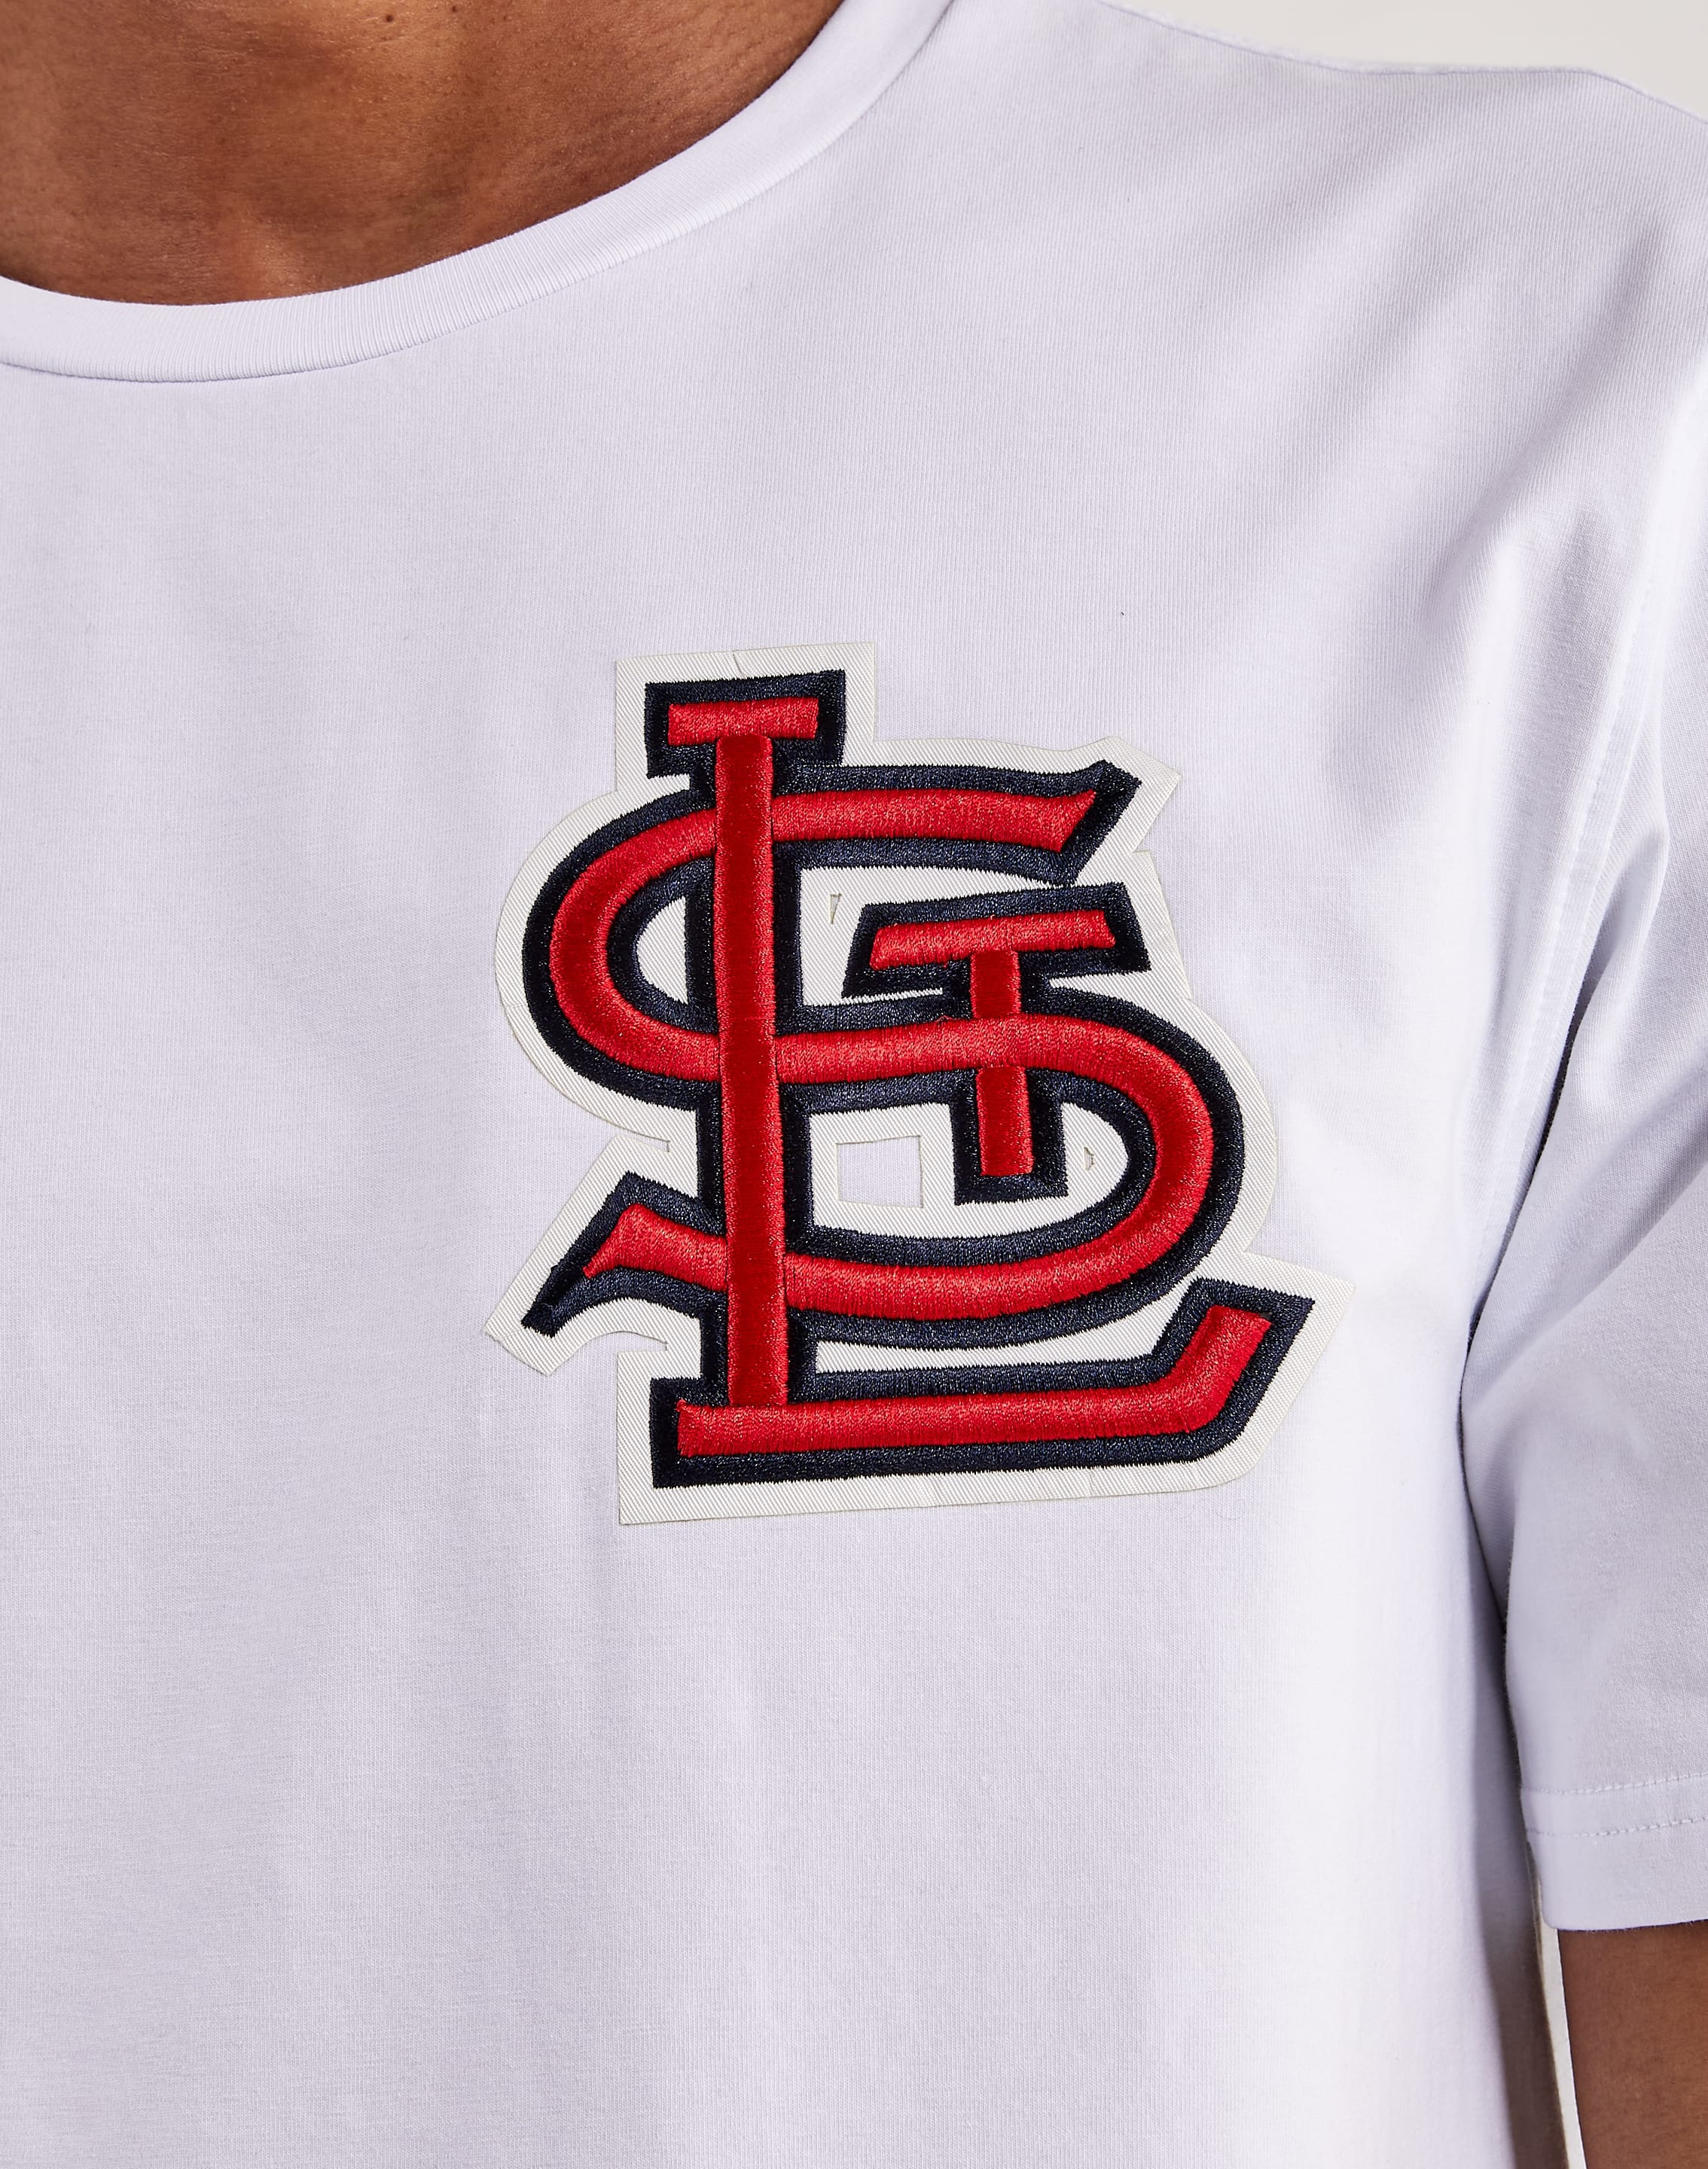 Lids St. Louis Cardinals Pro Standard Hometown T-Shirt - Red